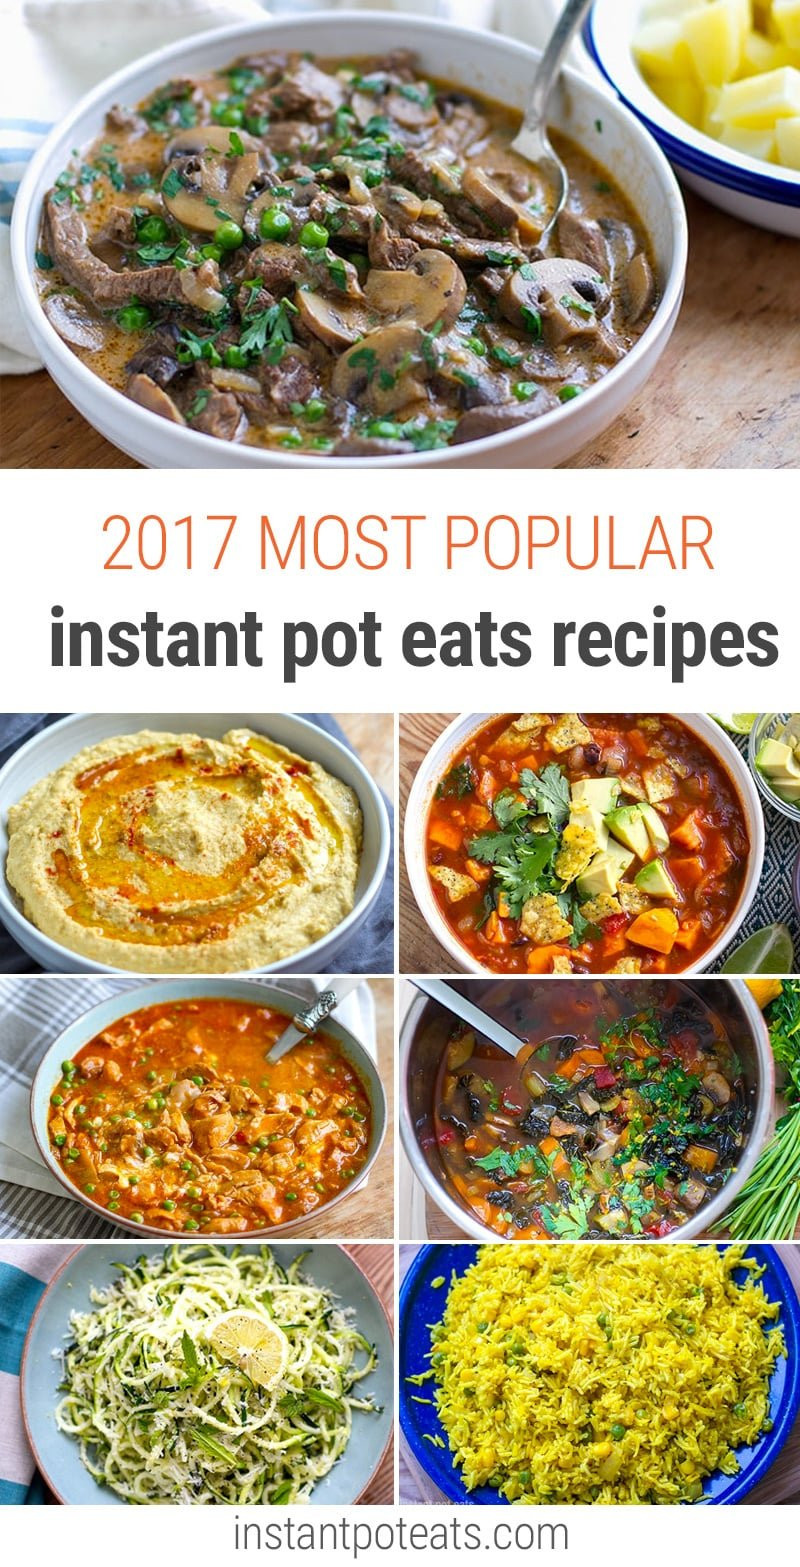 Top 10 Instant Pot Recipes
 Top 10 Most Popular Instant Pot Eats Recipes of 2017